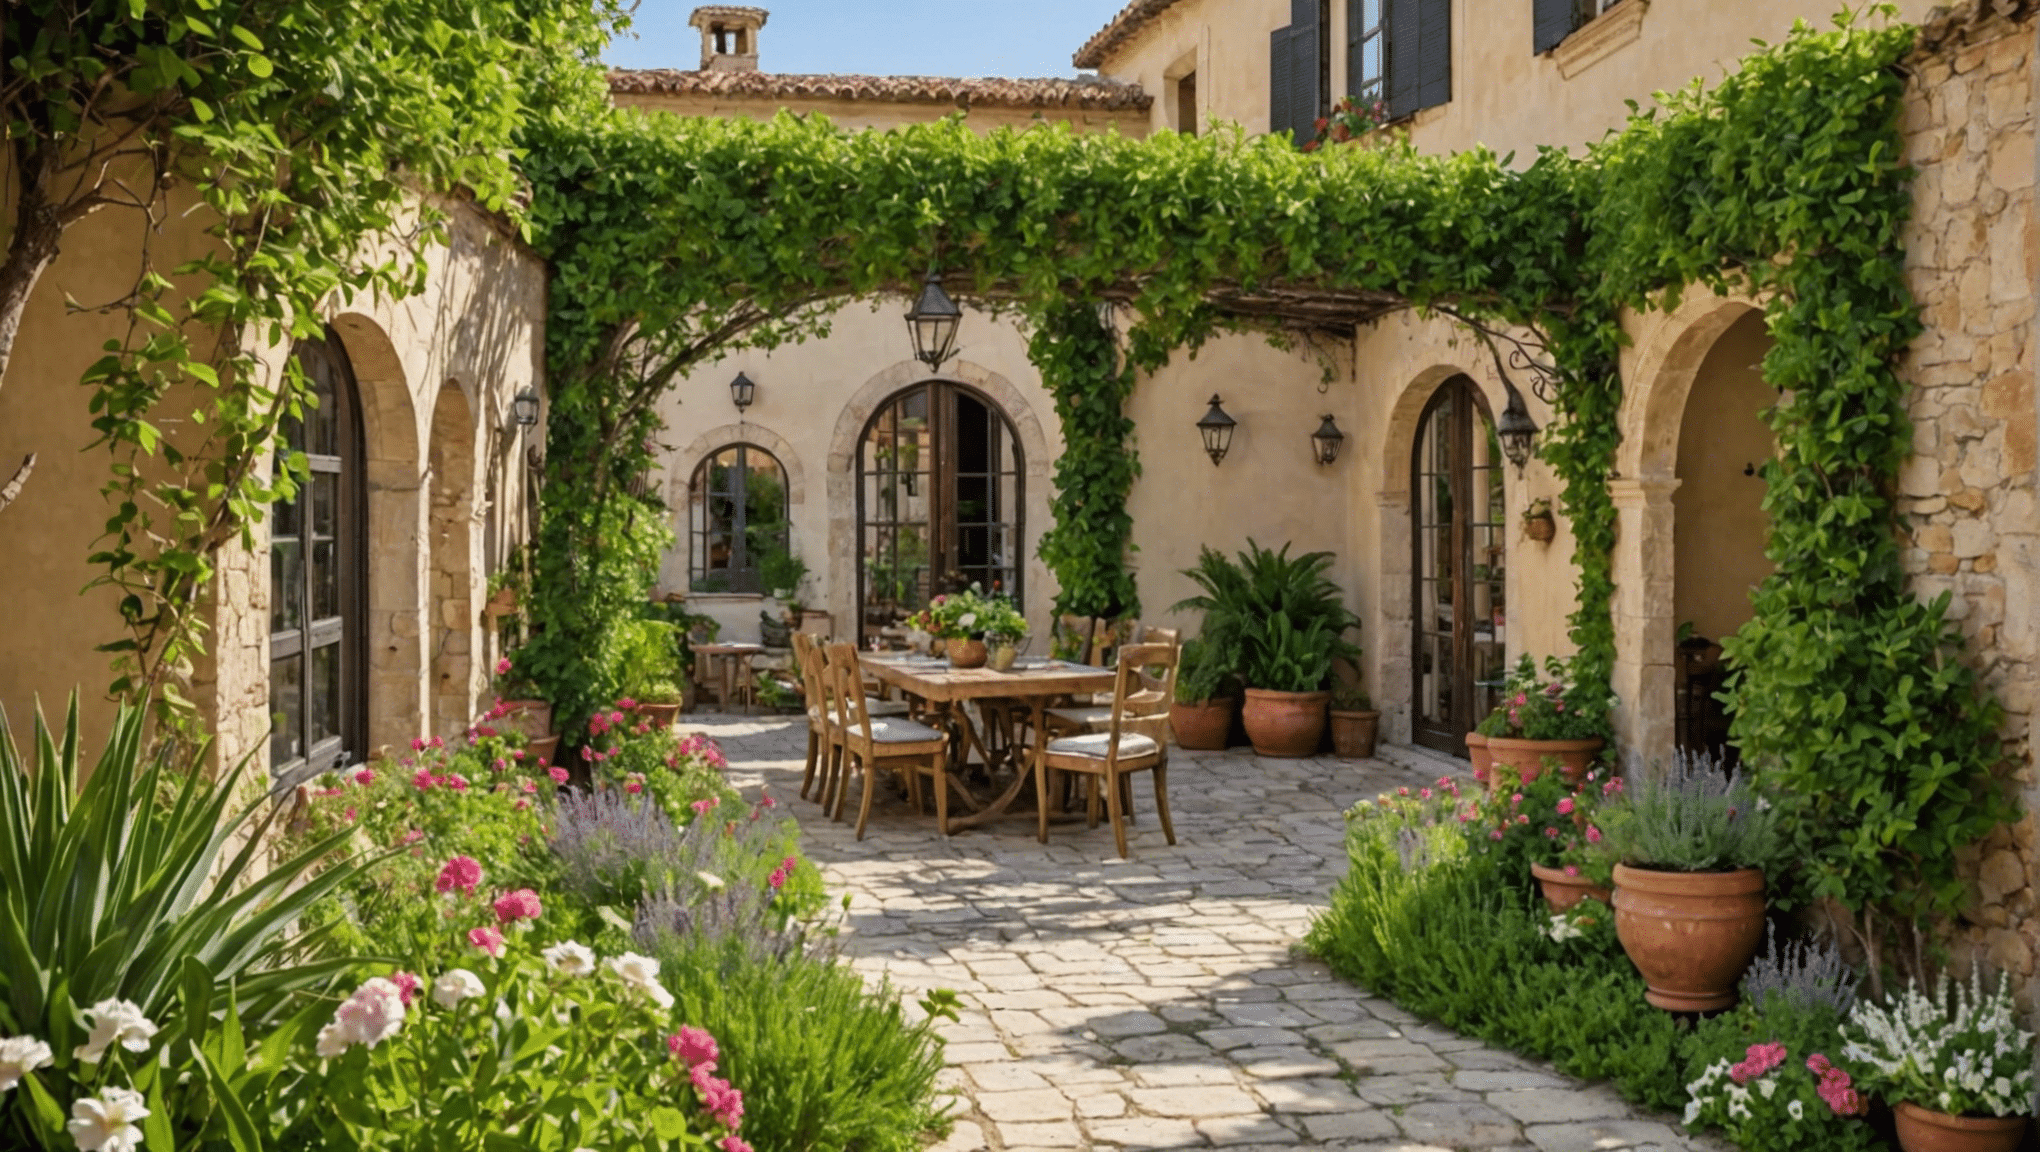 esplora idee di giardinaggio mediterraneo per trasformare il tuo spazio esterno con la nostra stimolante raccolta di suggerimenti e progetti.